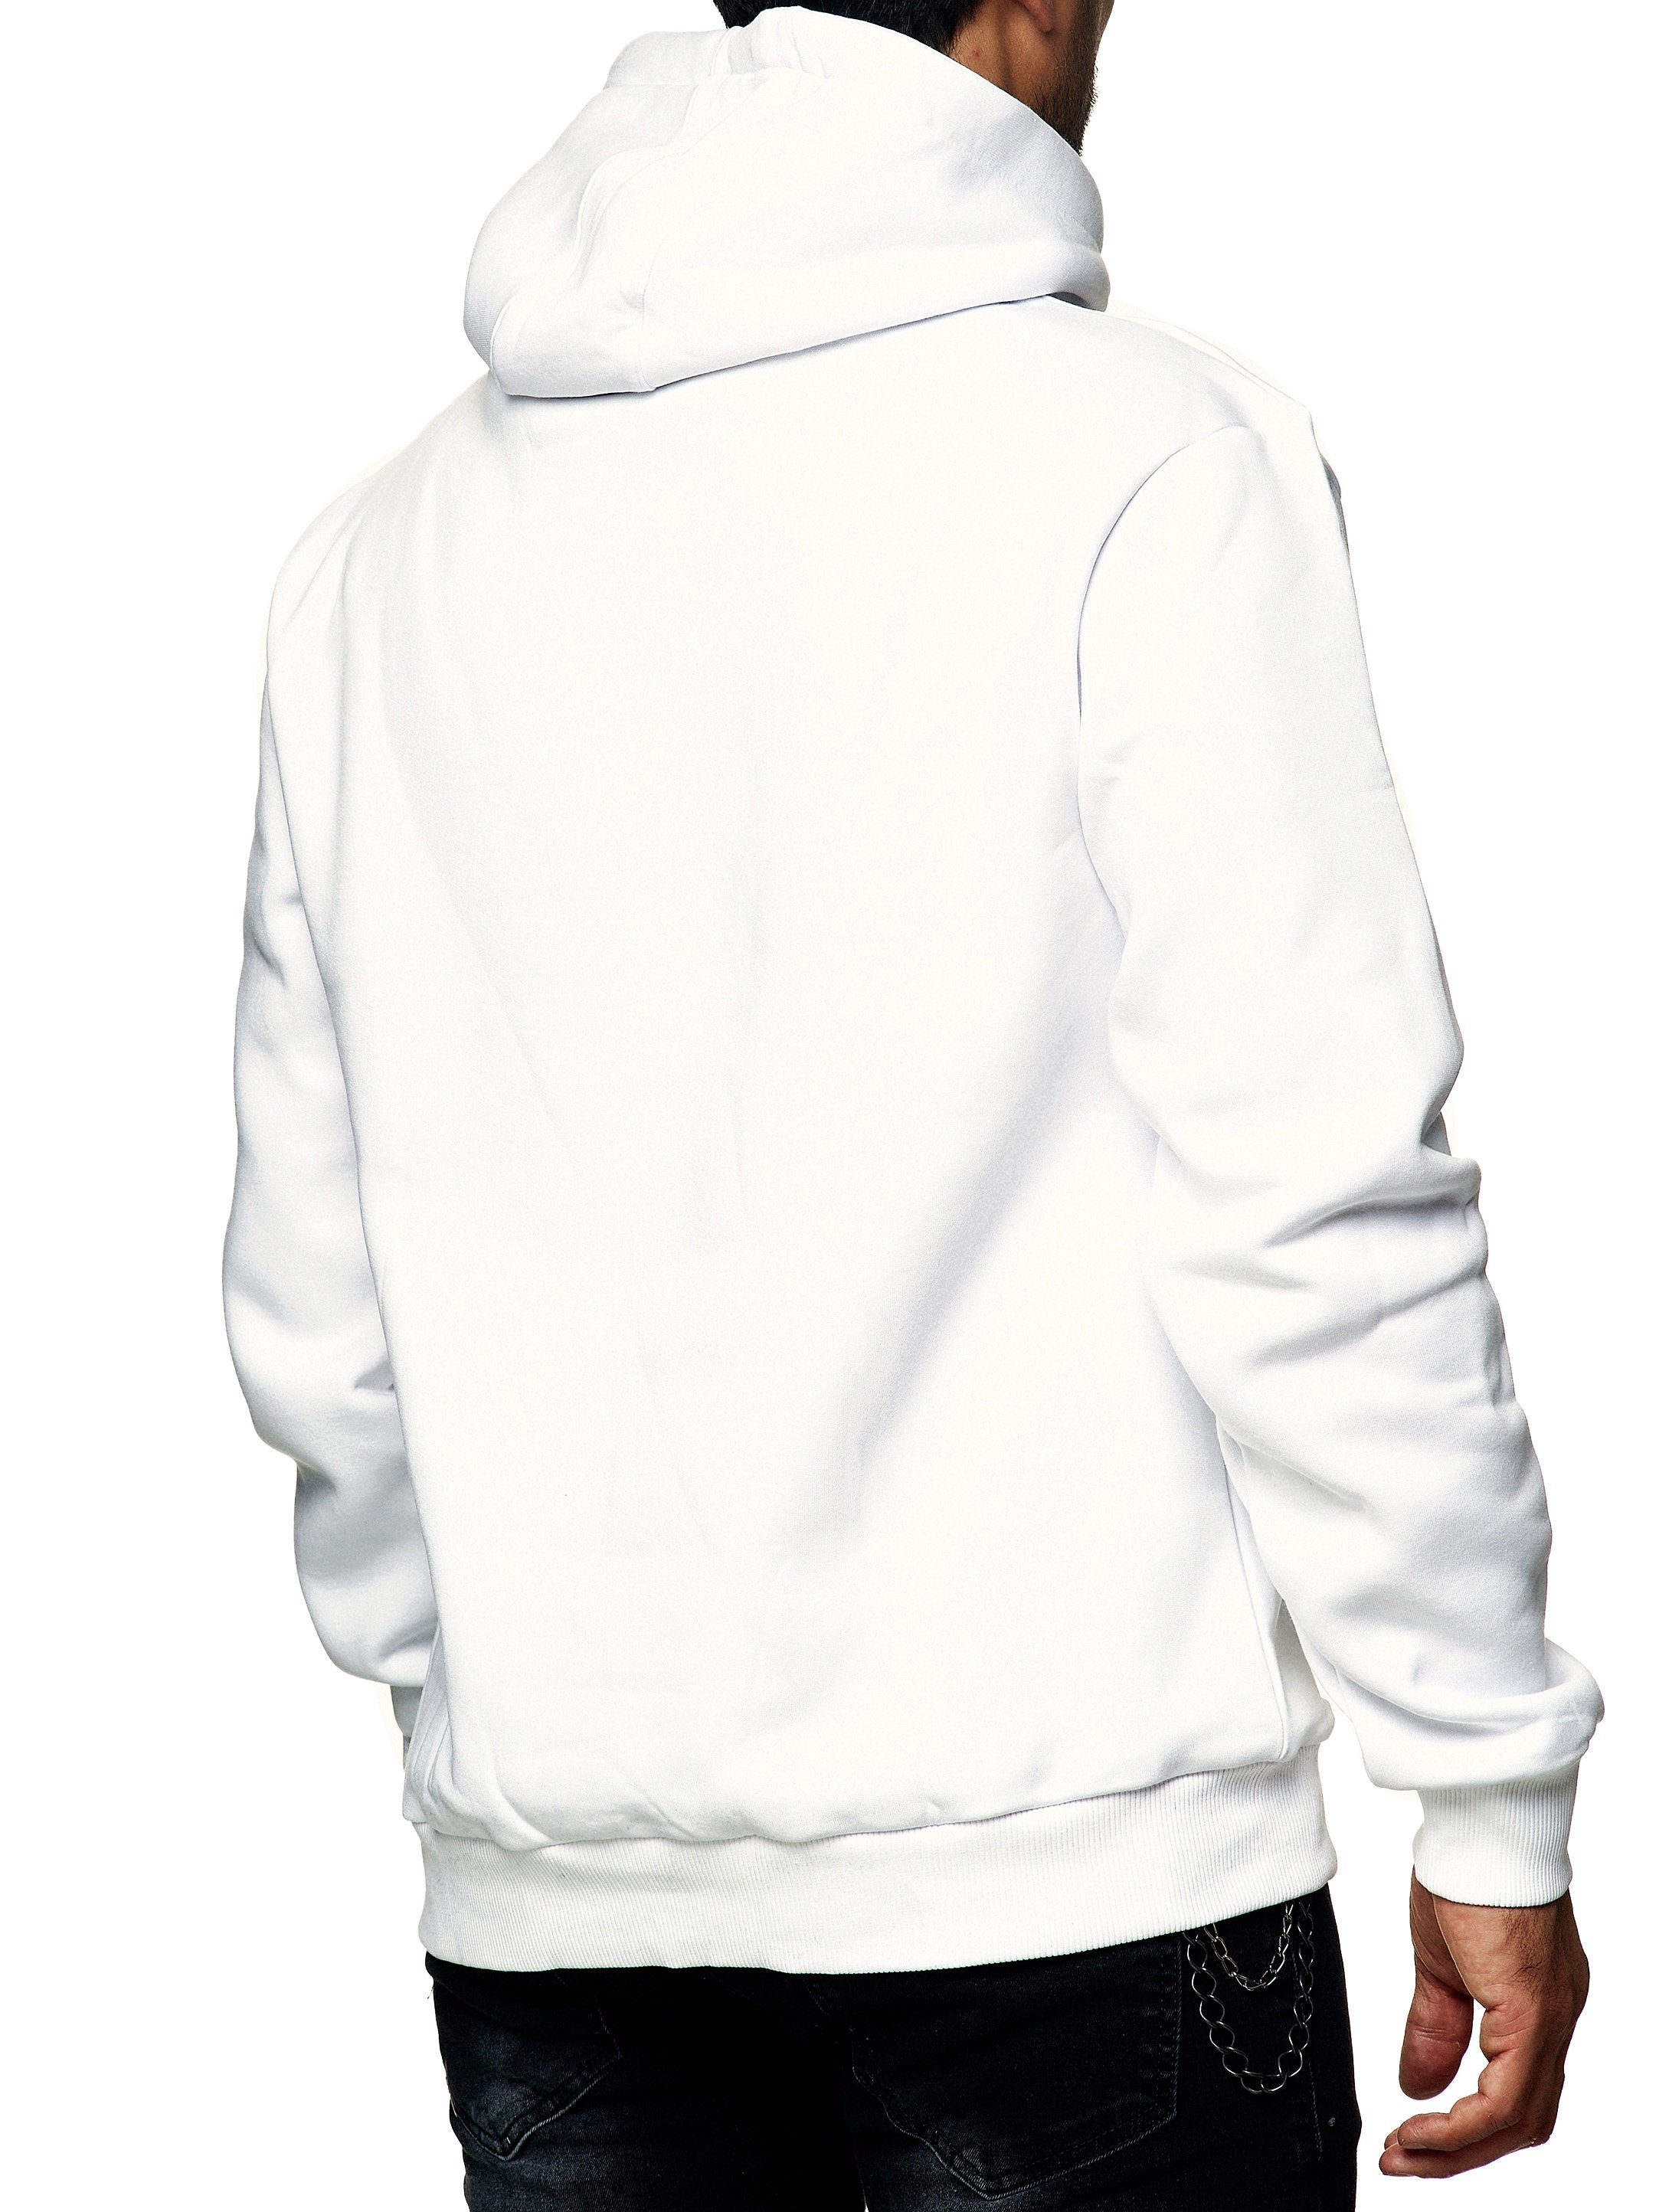 BRUDAA (Hoodie BRU-007 Kapuzenpullover Hoodie Casual 1-tlg) Sweater, Weiß Freizeit Fitness